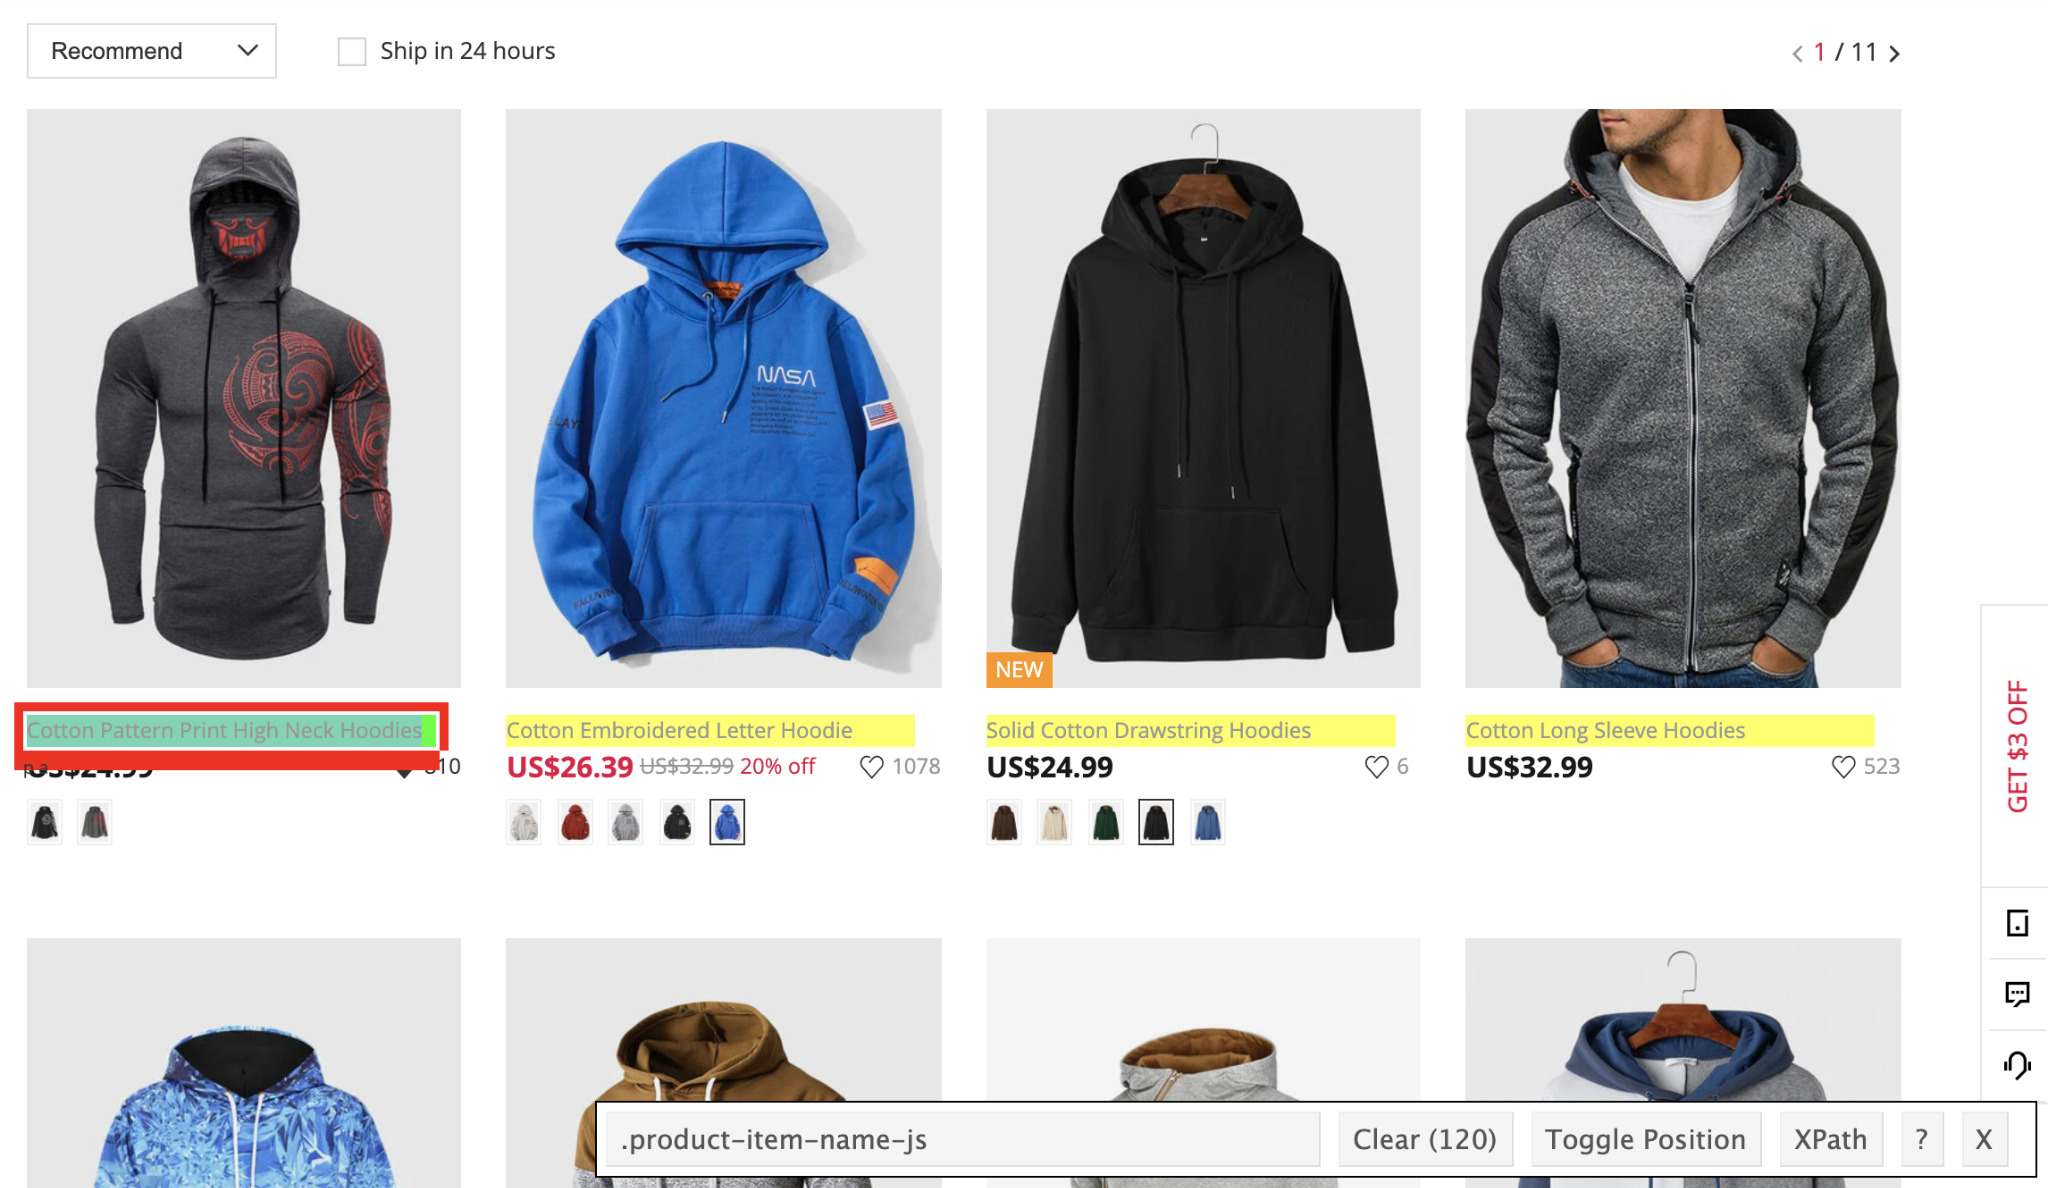  image of men’s hoodies webpage.